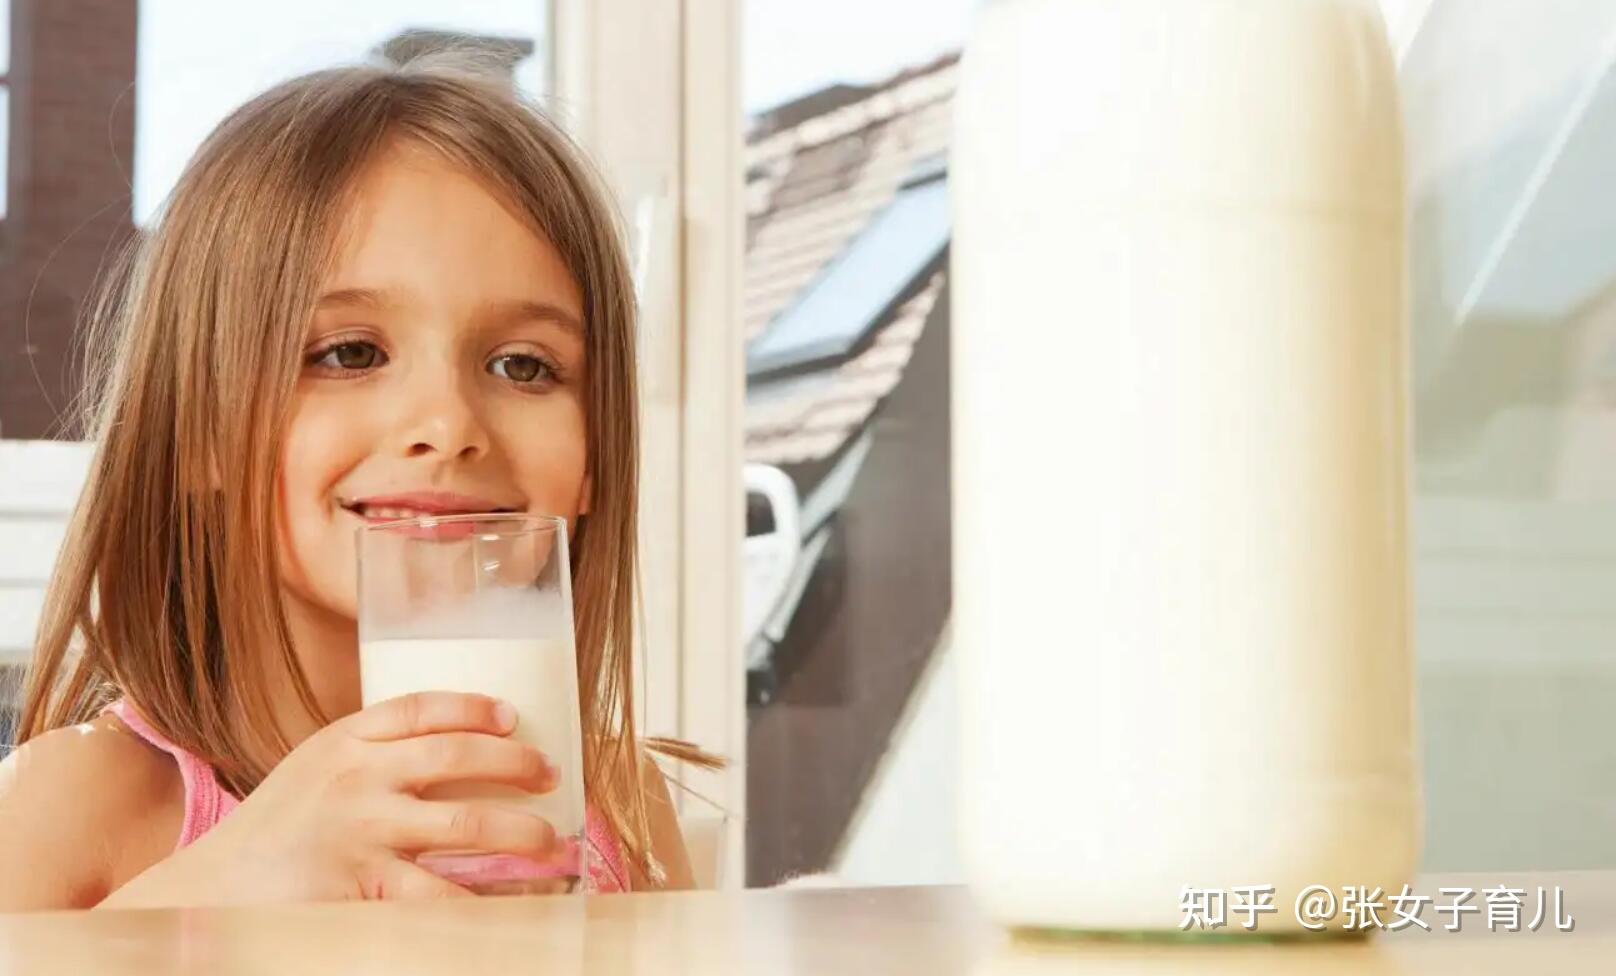 喝牛奶多放糖对身体有好处吗？-_补肾参考网